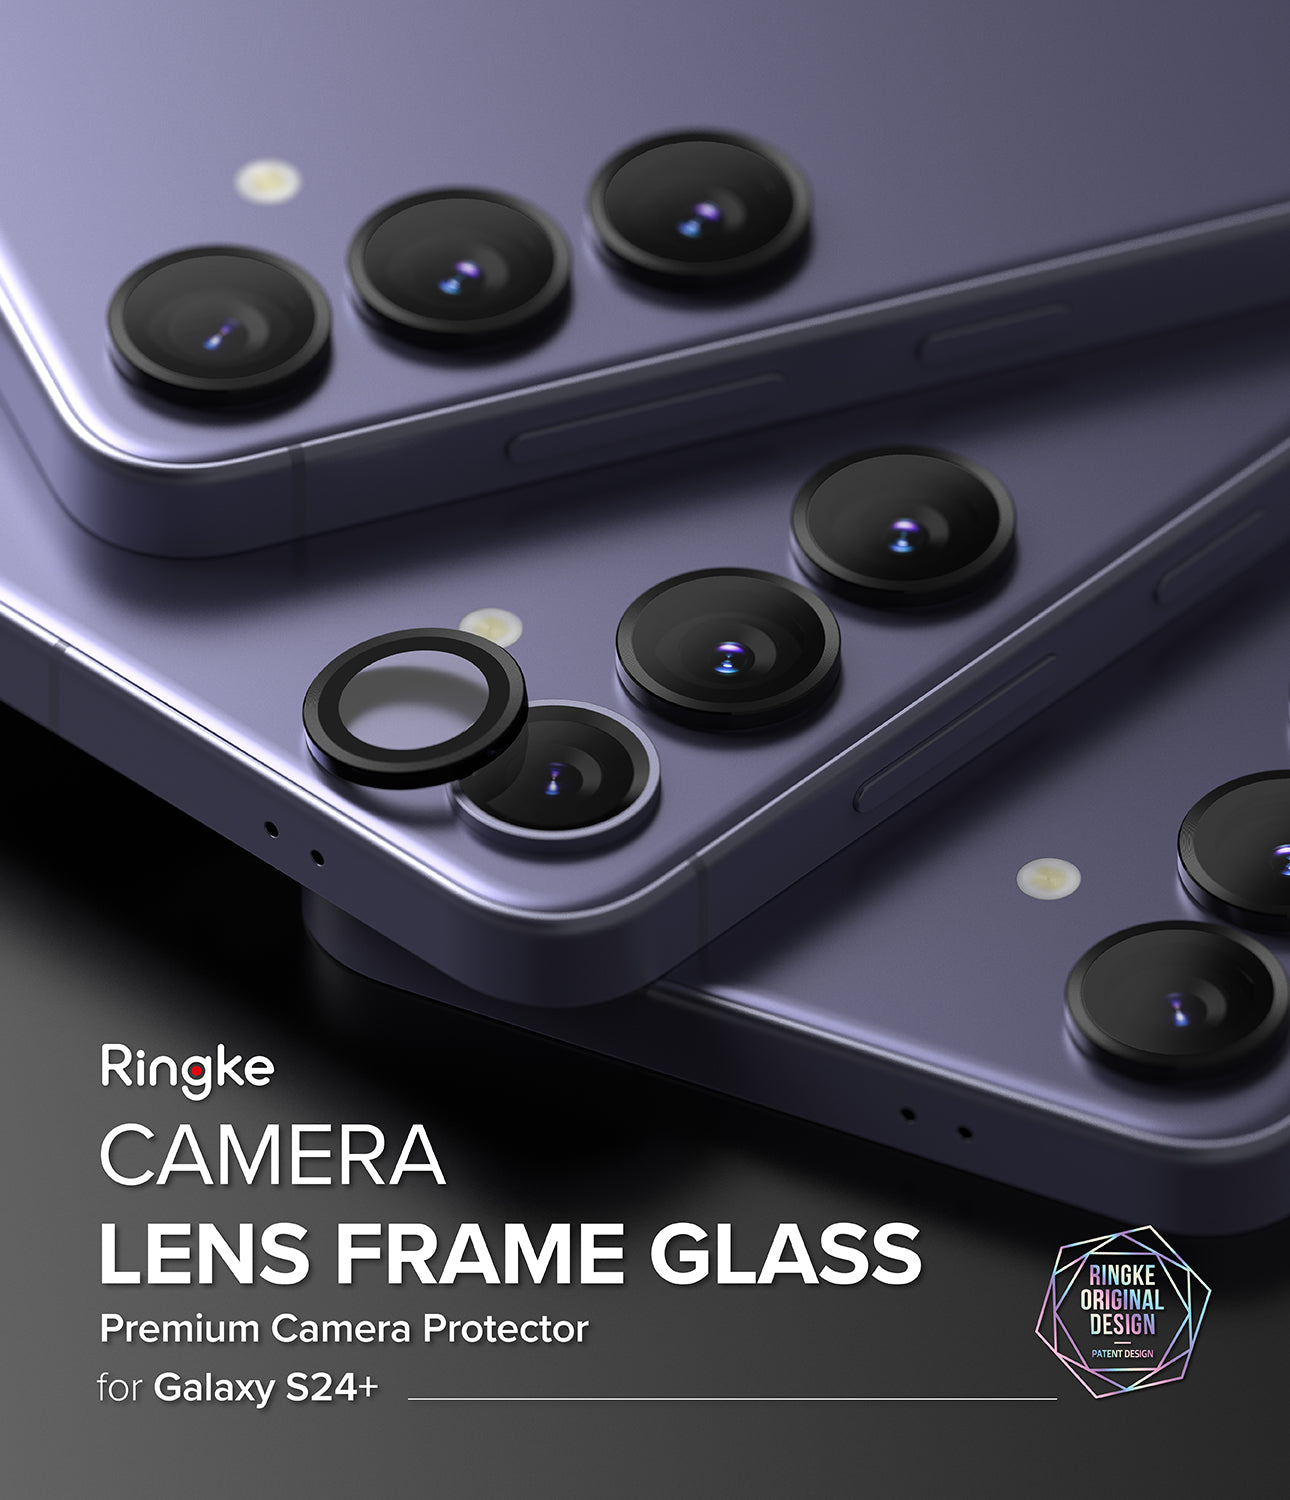 Samsung Galaxy S24 Plus Camera Lens Frame Glass | Camera Lens Frame Glass Series |Black